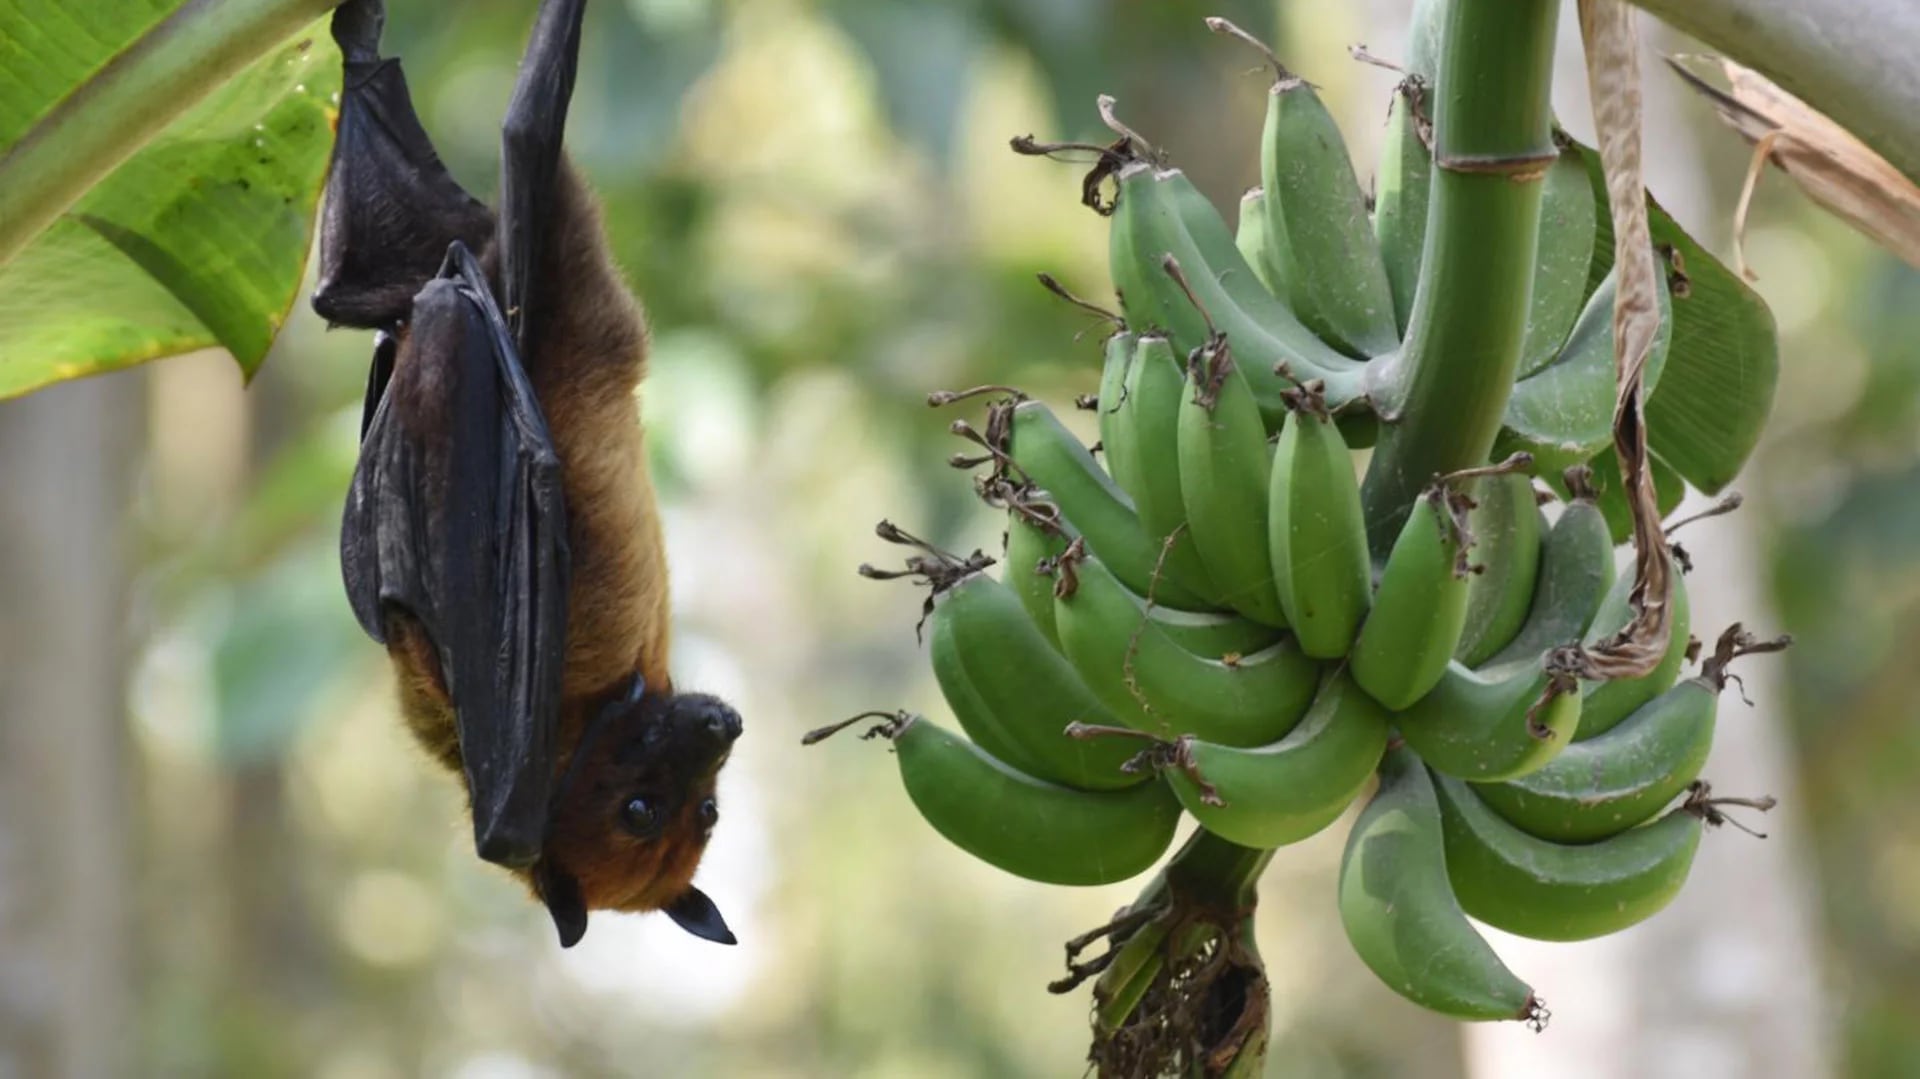 El virus Nipah fue aislado y descripto por primera vez en 1999. Un grupo de murciélagos que viven en Asia son reservorio de esos patógenos
(National Institute of Allergy and Infectious Diseases (NIAID)